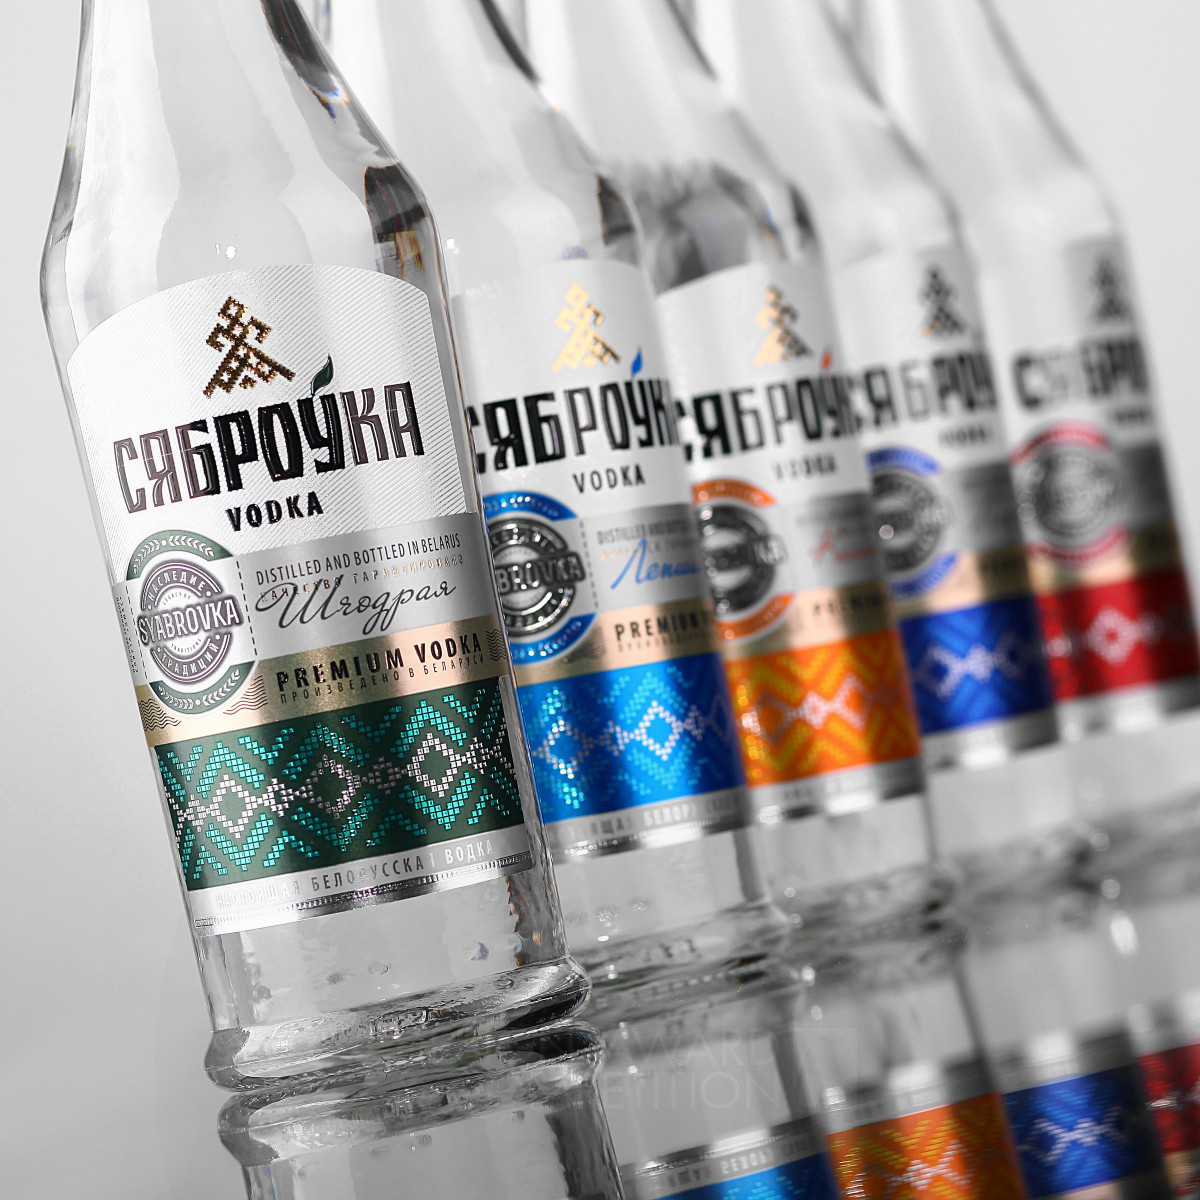 Syabrovka Belarusian vodka by Valerii Sumilov